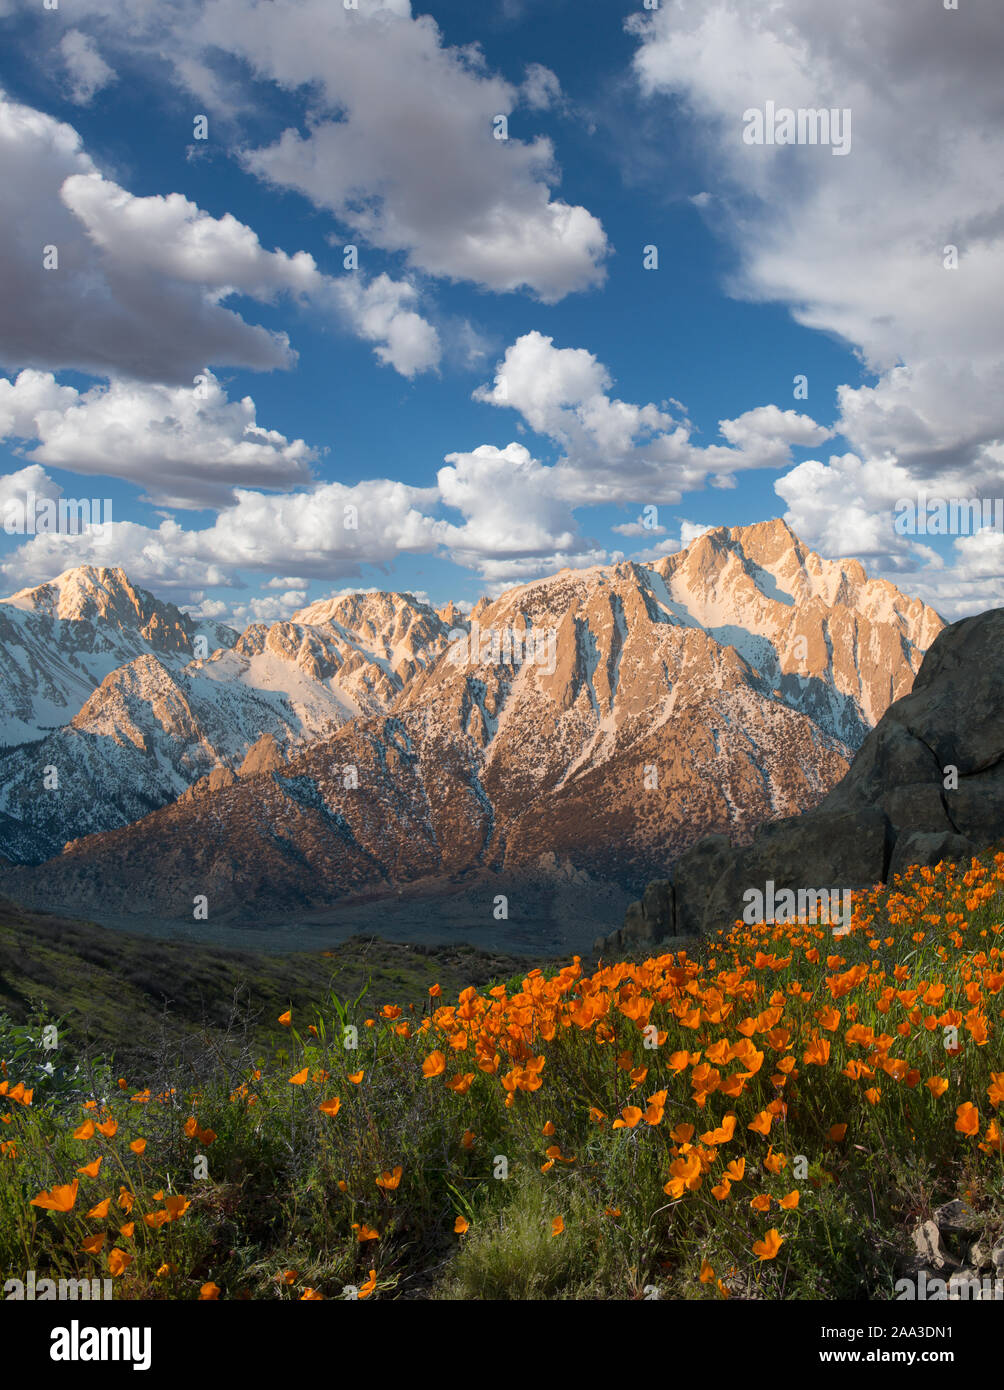 Mount Whitney and Sierra Nevada Mountain Range, California, USA Stock Photo